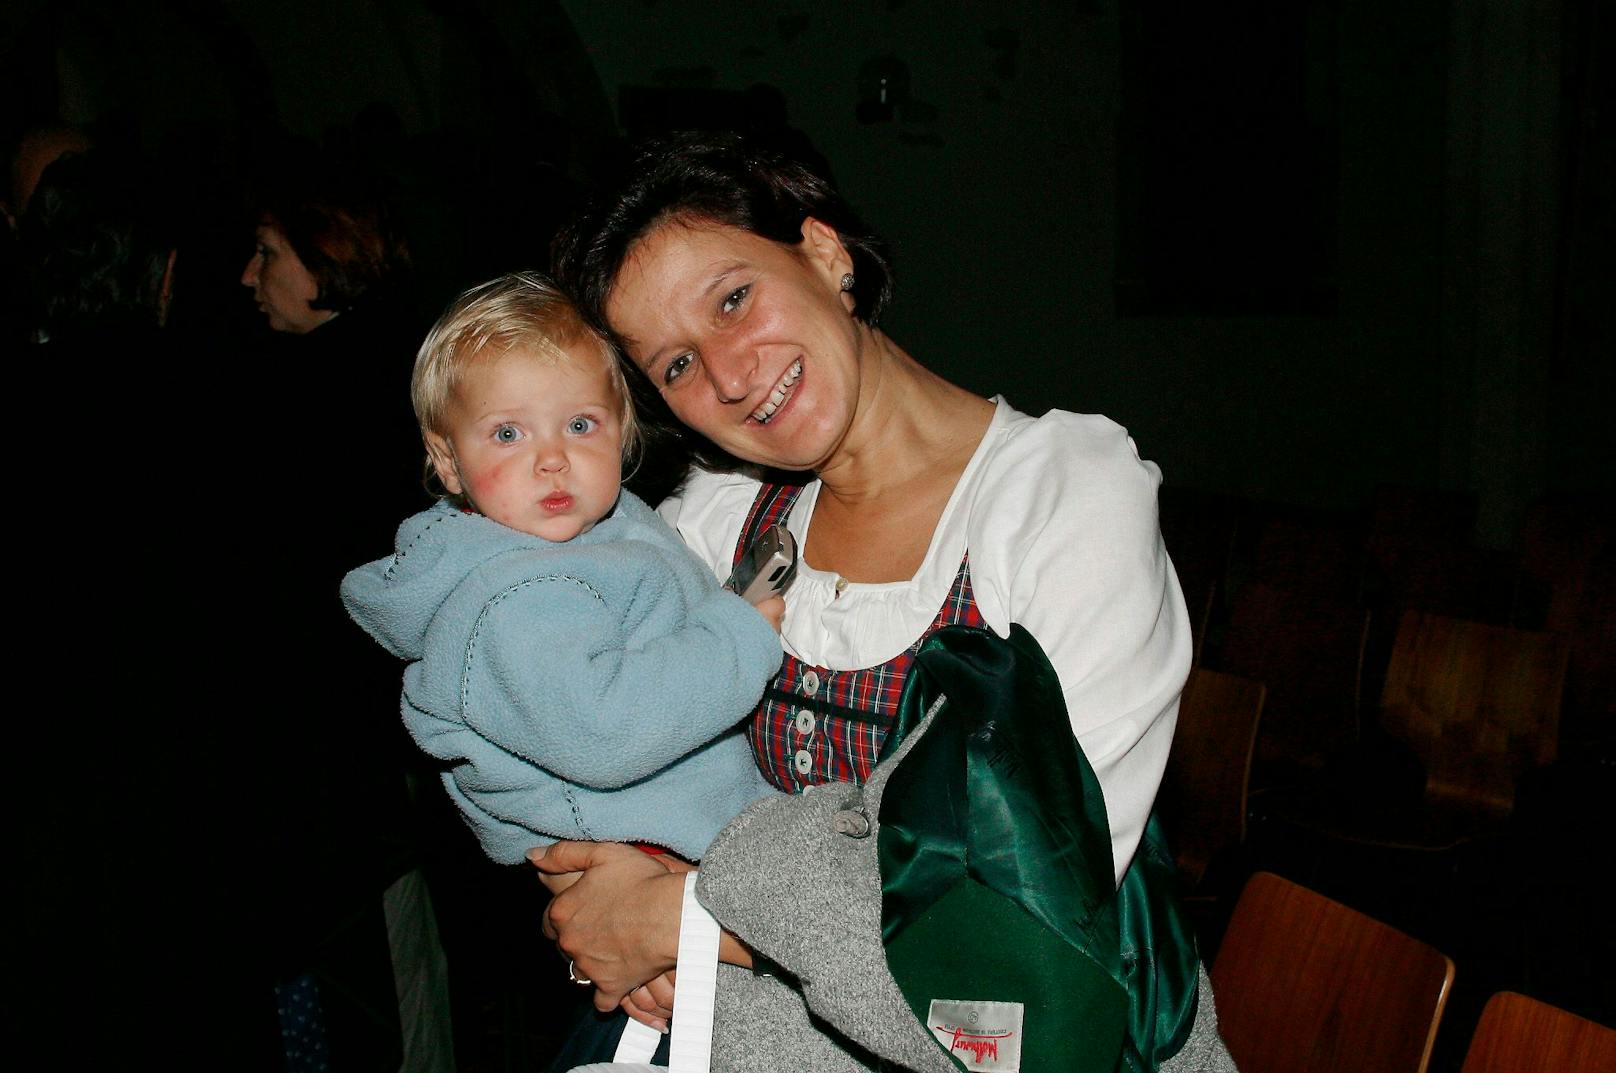 Gemeinsam mit ihrem Ehemann Andreas Mikl hat sie zwei Töchter. Hier am Foto sieht man sie im Jahr 2002 bei der Bauernbund-Wallfahrt in Mariazell. Am Arm trägt sie Töchterchen Katharina.